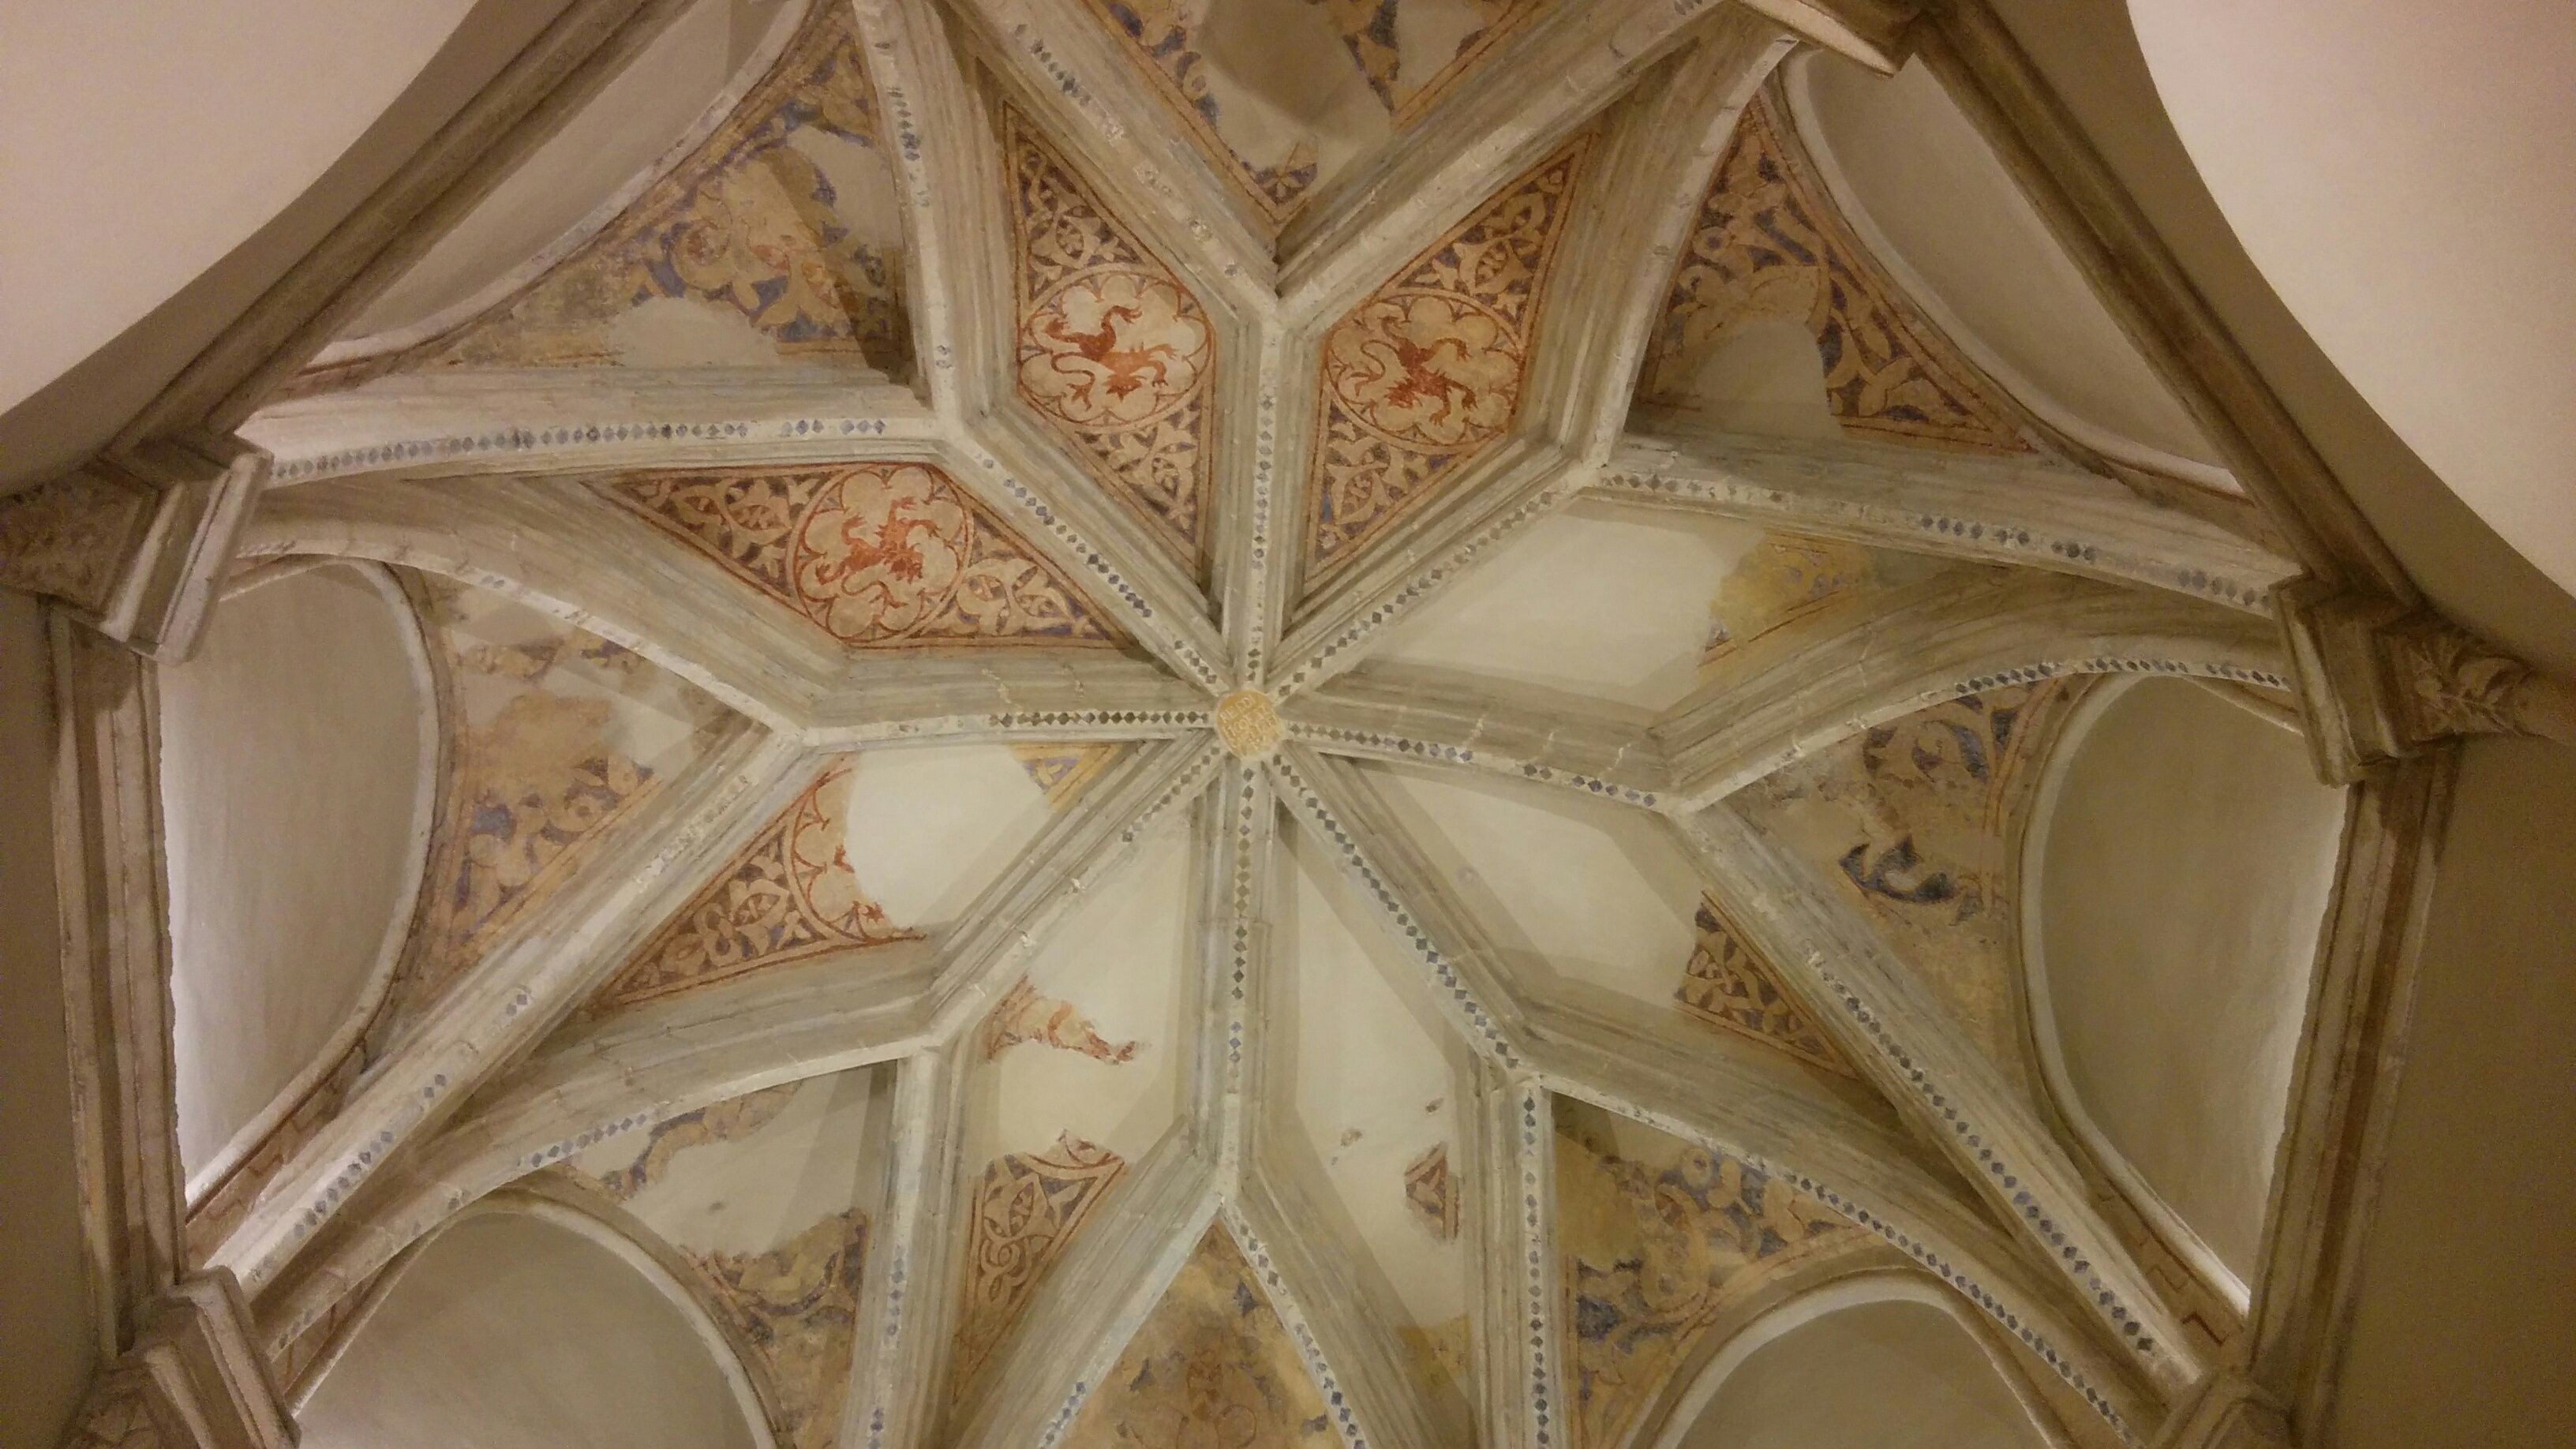 Manipulando nuestro pasado medieval. Detalle de la bóveda de la Capilla de la Jura, en San Juan de los Caballeros, Jerez, captado por el autor del artículo.